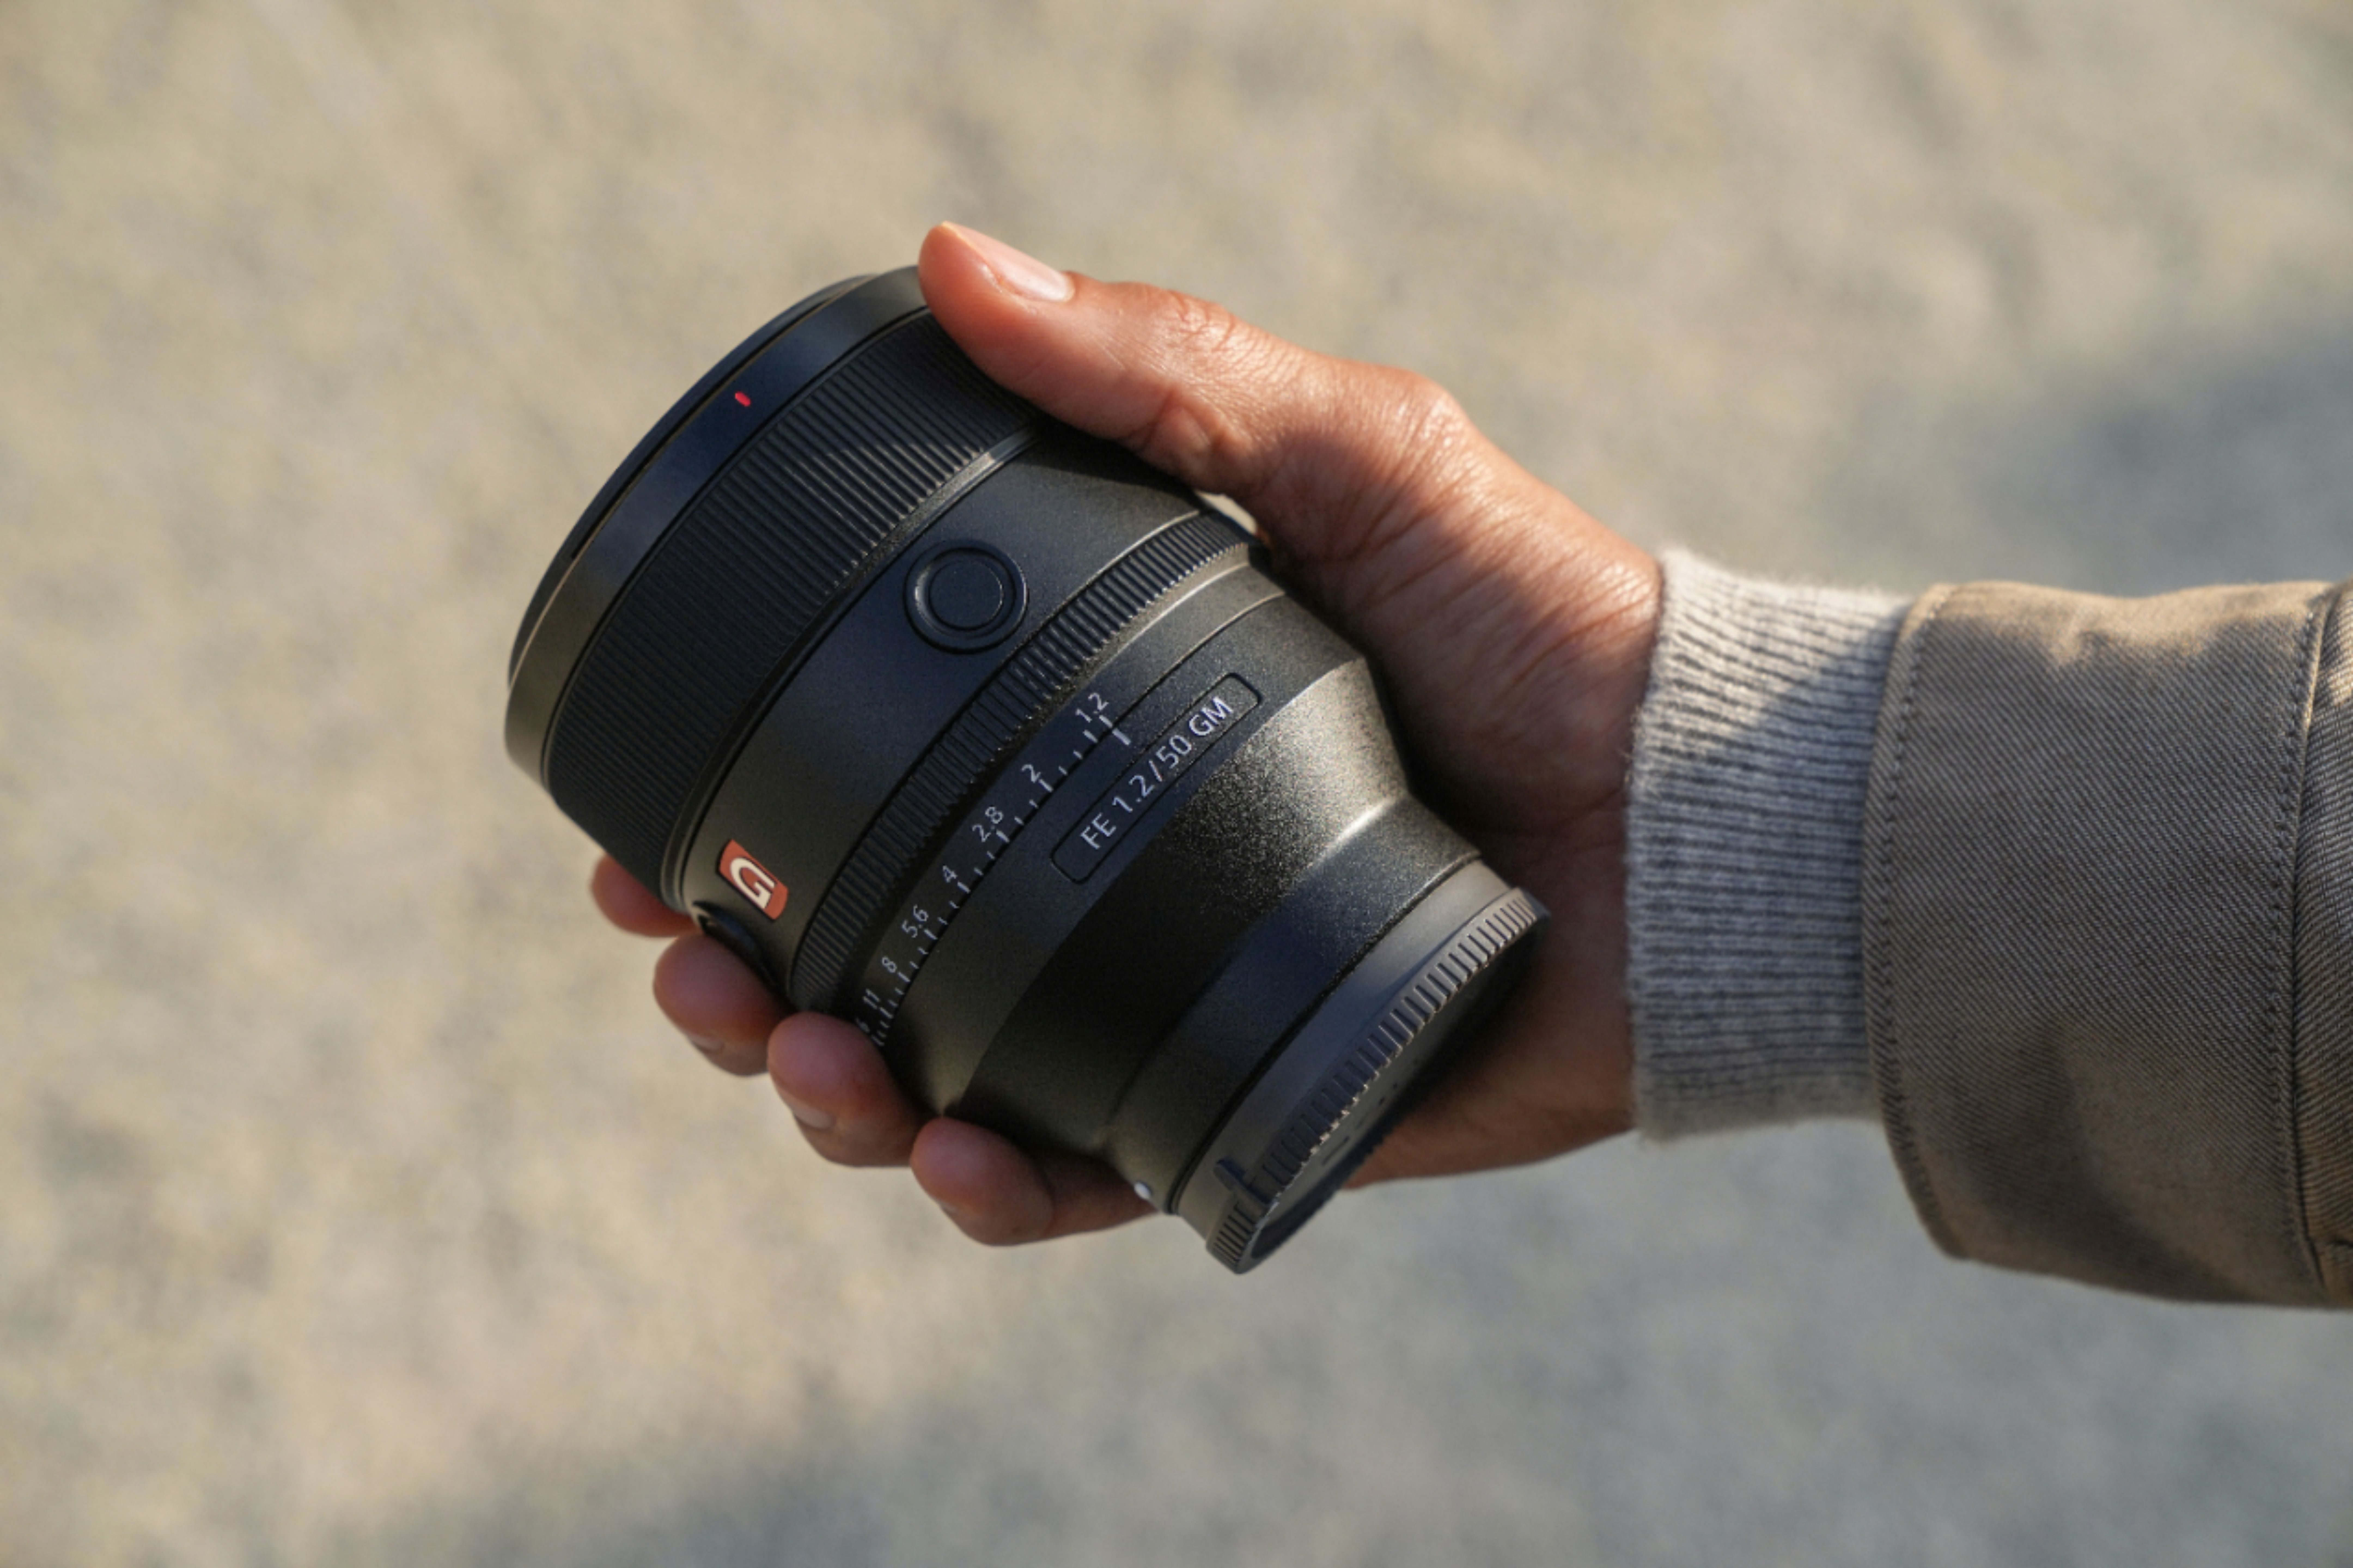 カメラ レンズ(単焦点) FE 50mm F1.2 Full-frame GM Lens for Sony Alpha E-mount Cameras 